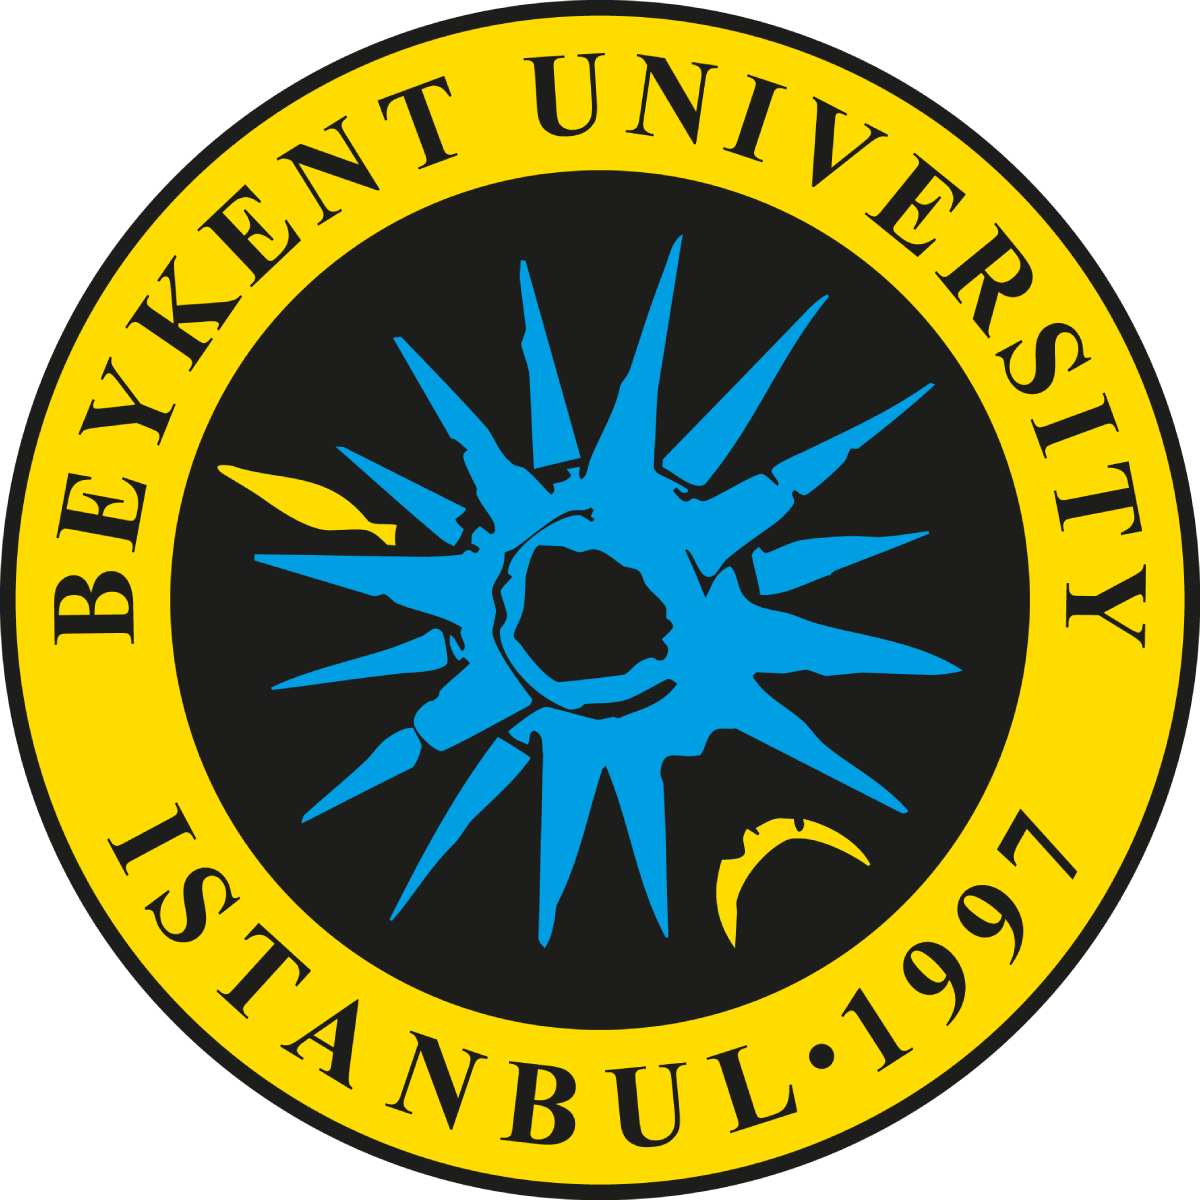 دانشگاه بیکنت استانبول